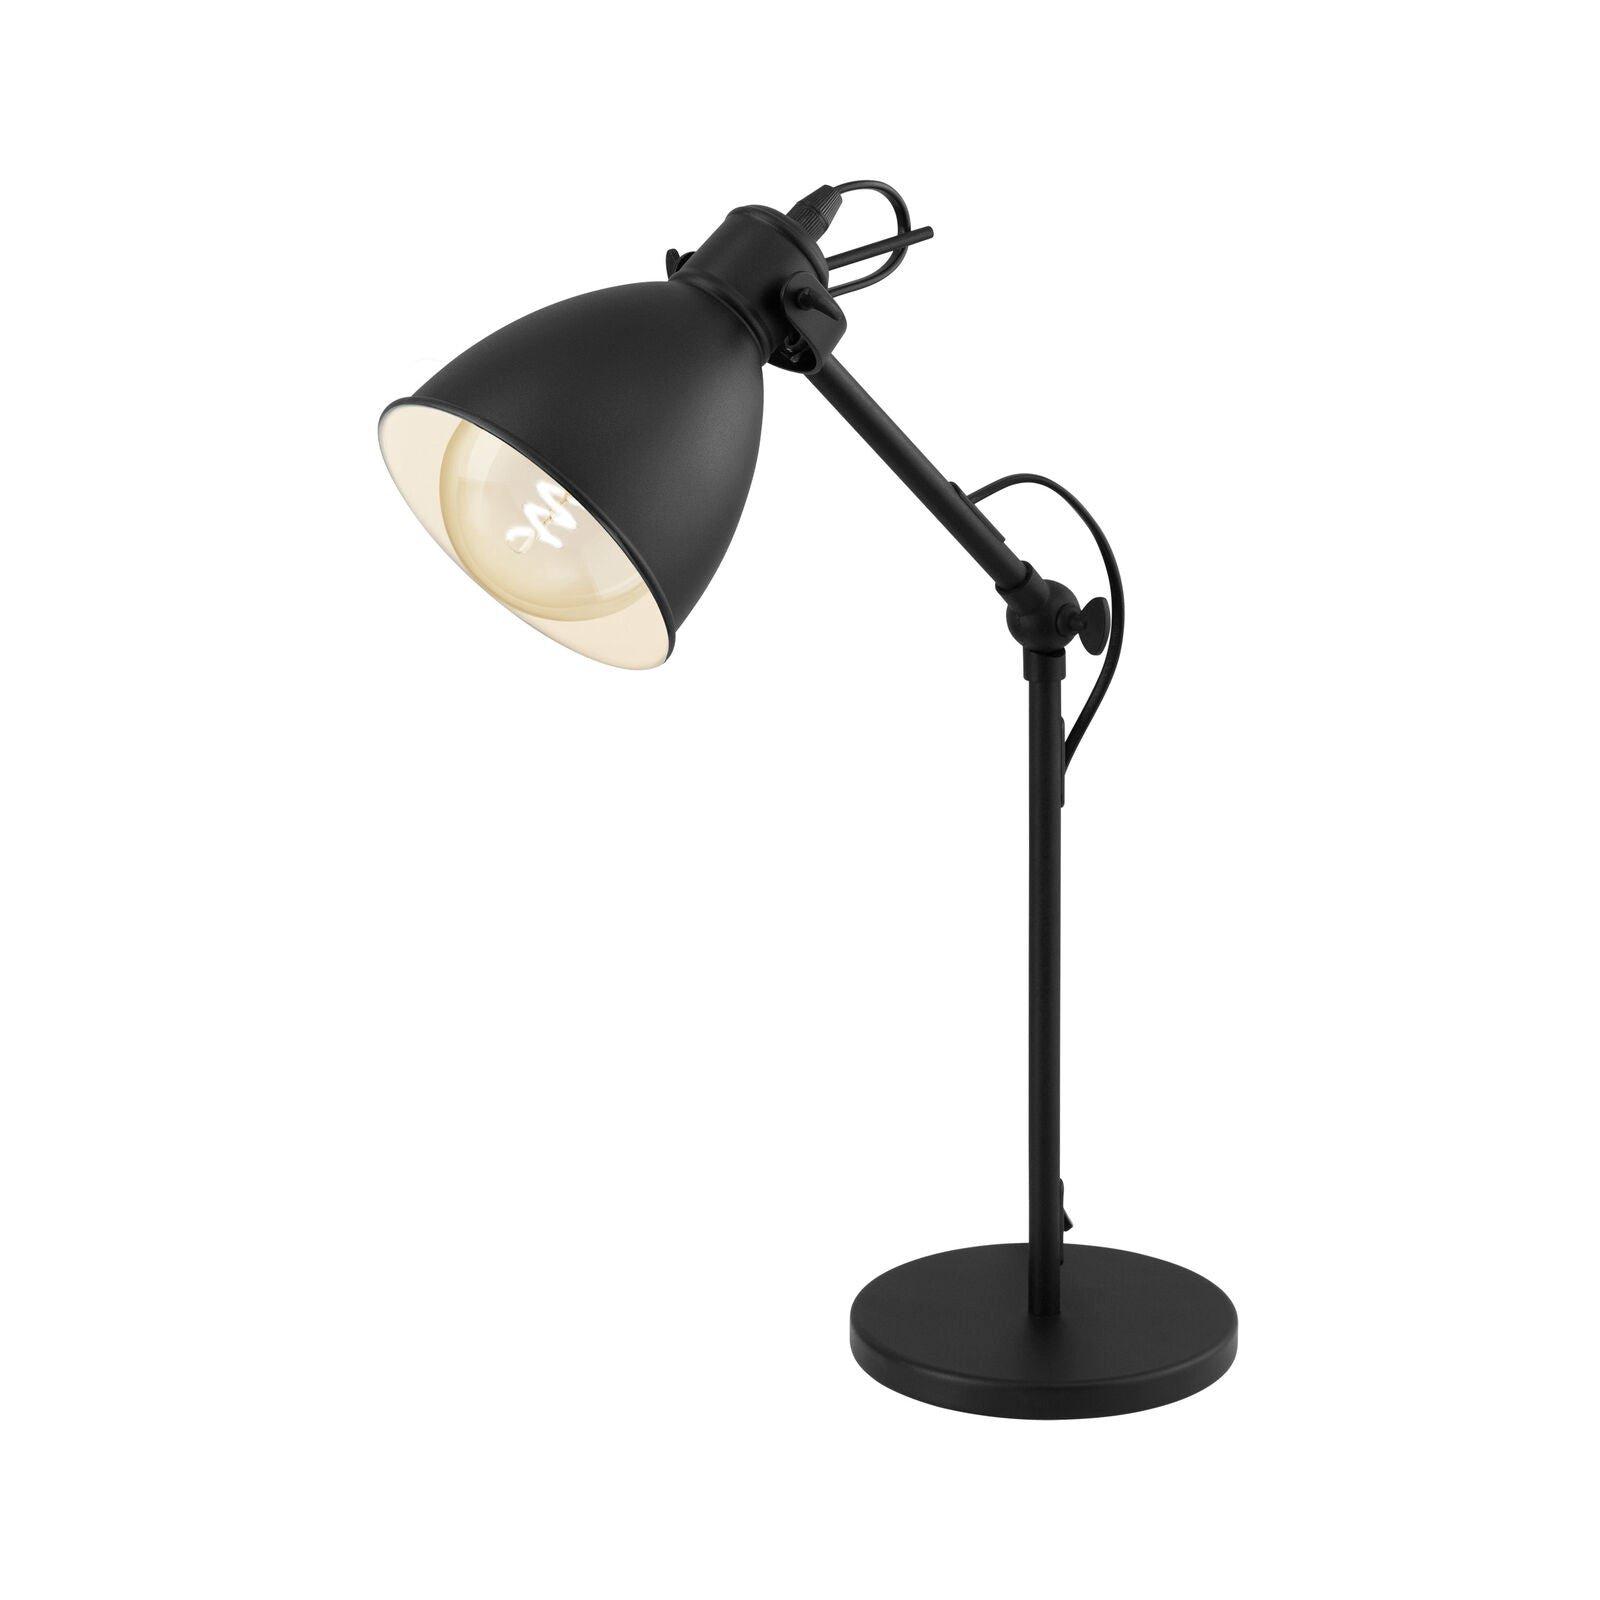 Adjustable Table Lamp Desk Light Black & White Steel Shade 1 x 40W E27 Bulb